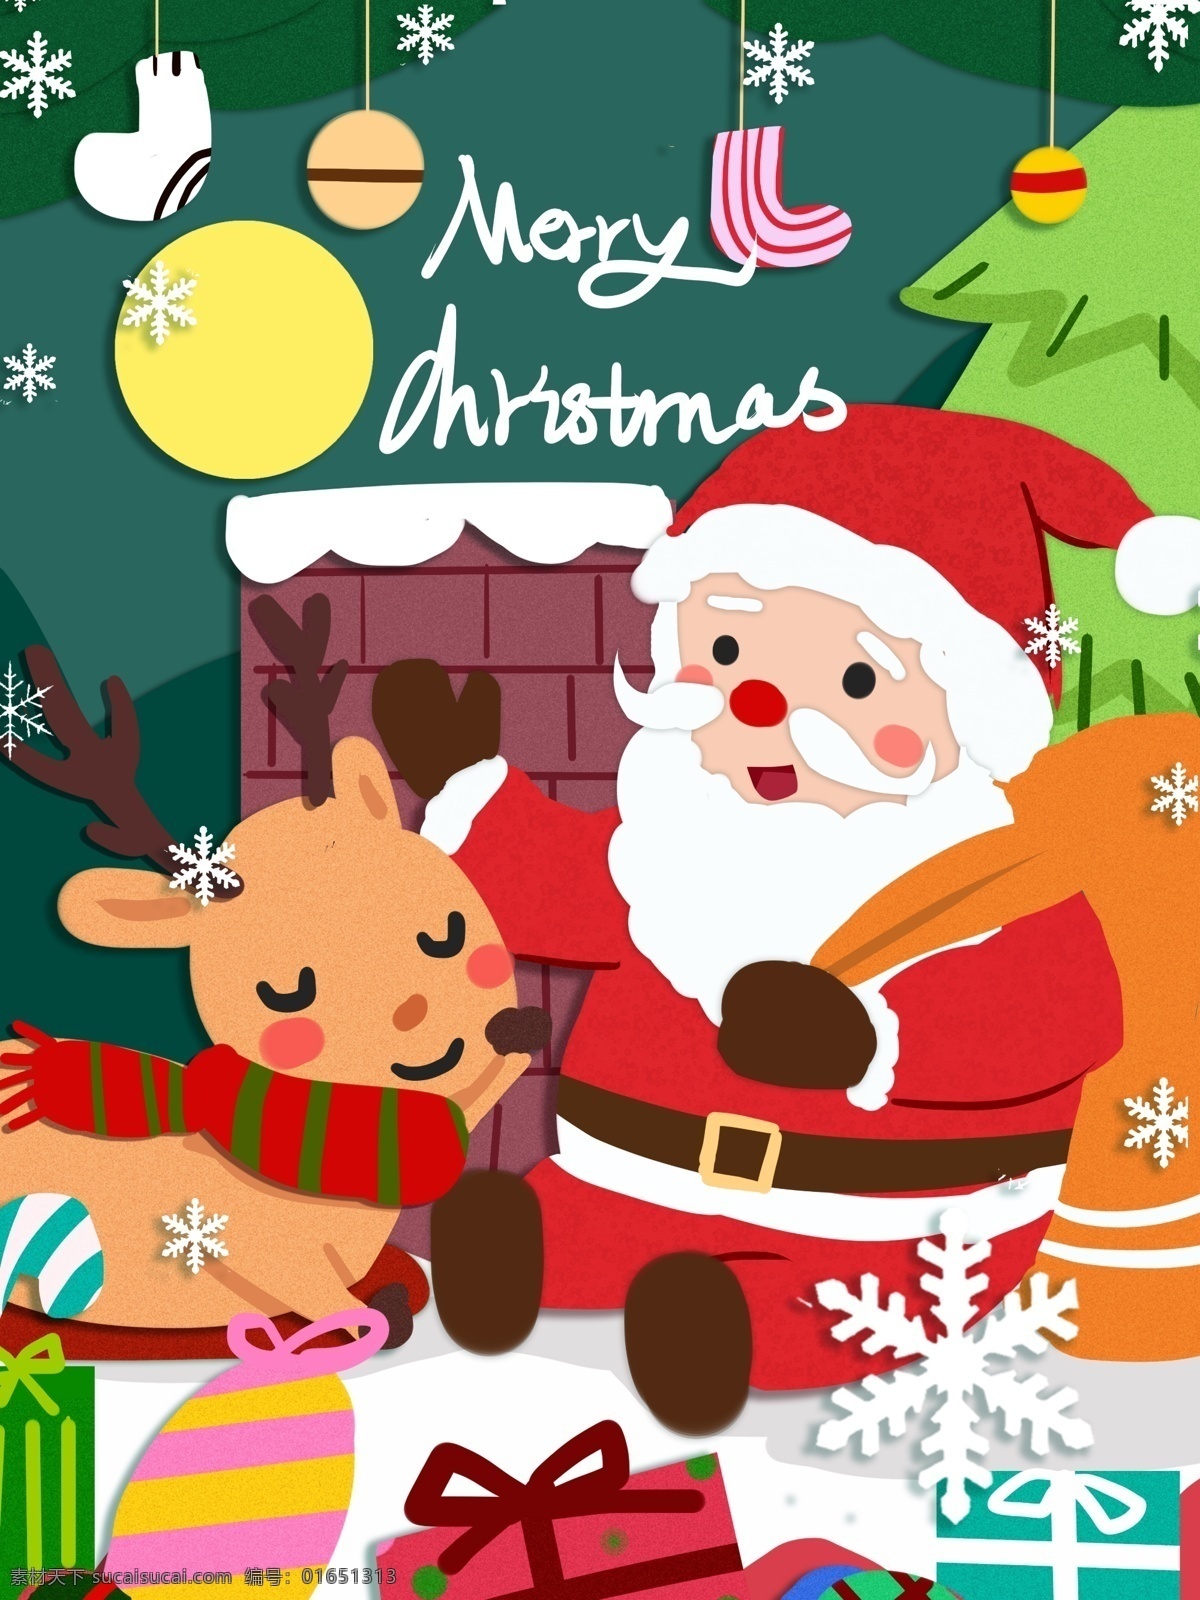 圣诞节 圣诞老人 鹿 可爱 温暖 温馨 剪纸 插画 礼物 袜子 麋鹿 剪纸风 圣诞快乐 扁平风